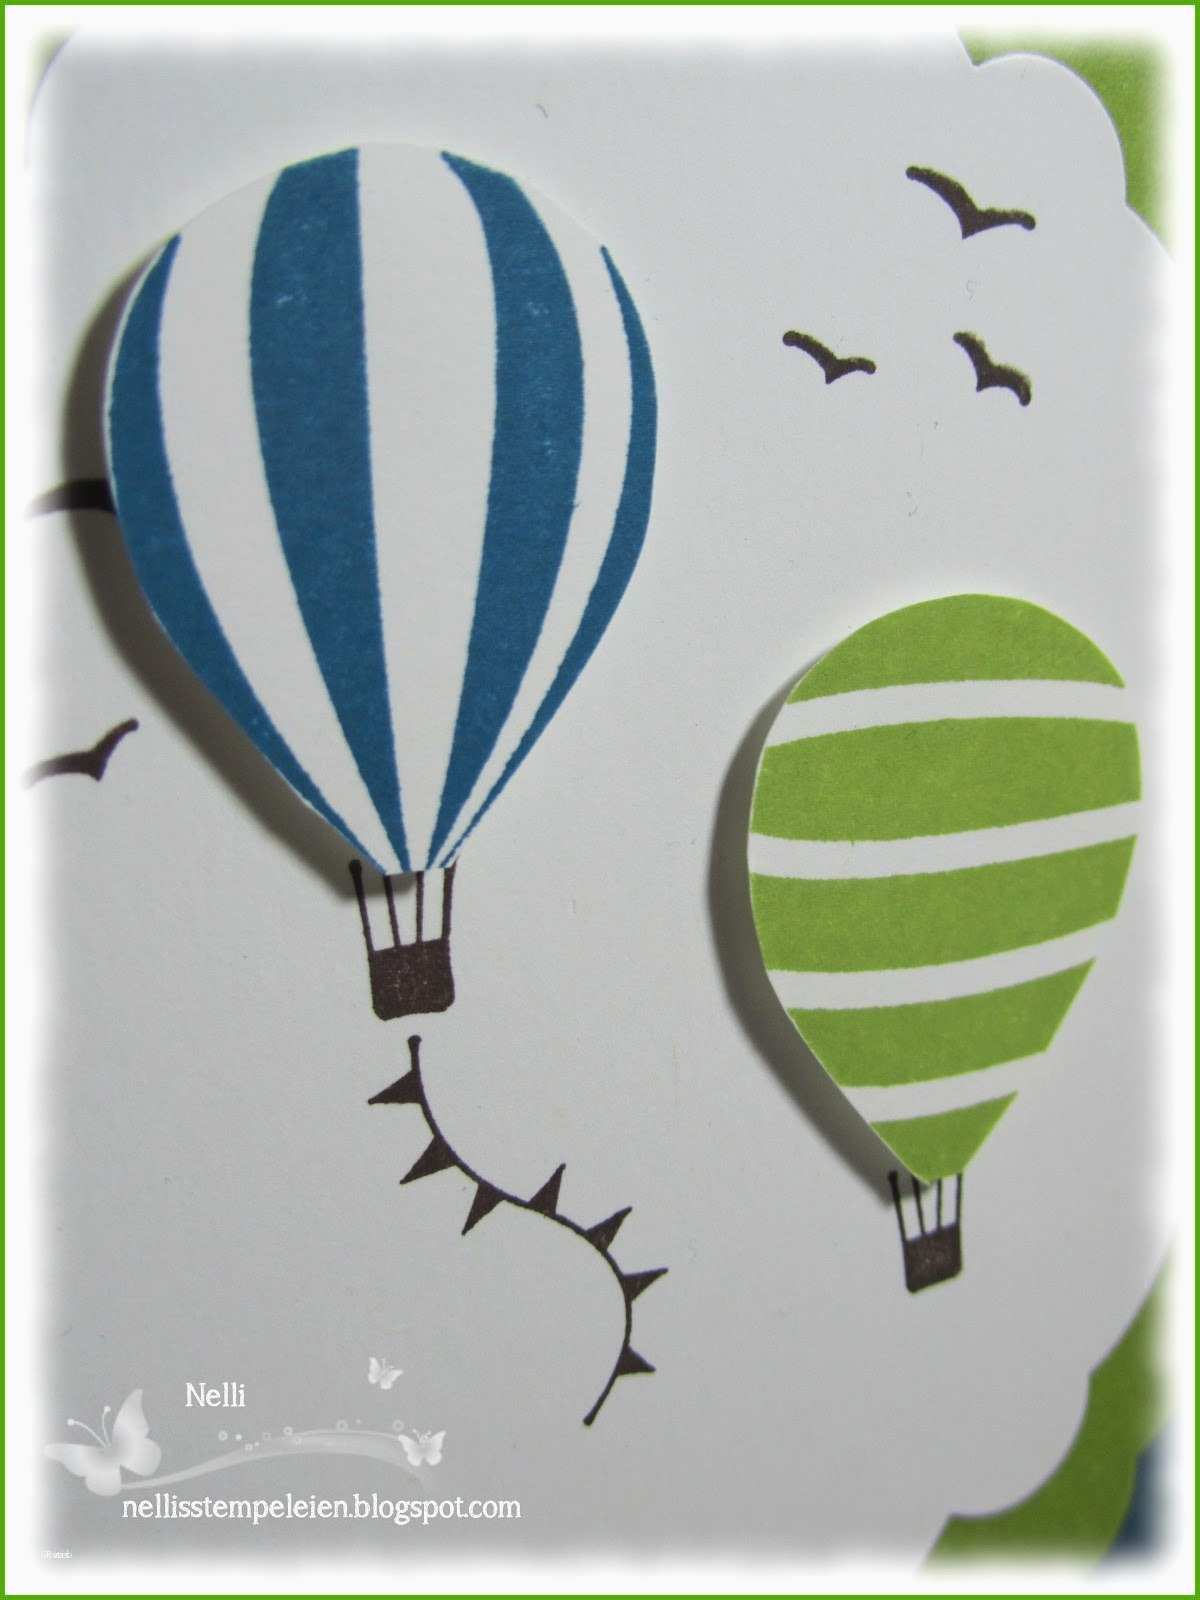 11 Atemberaubend Heissluftballon Basteln Vorlage Papier Sie Jetzt Versuchen Mussen Heissluftballon Basteln Heisluftballon Basteln Basteln